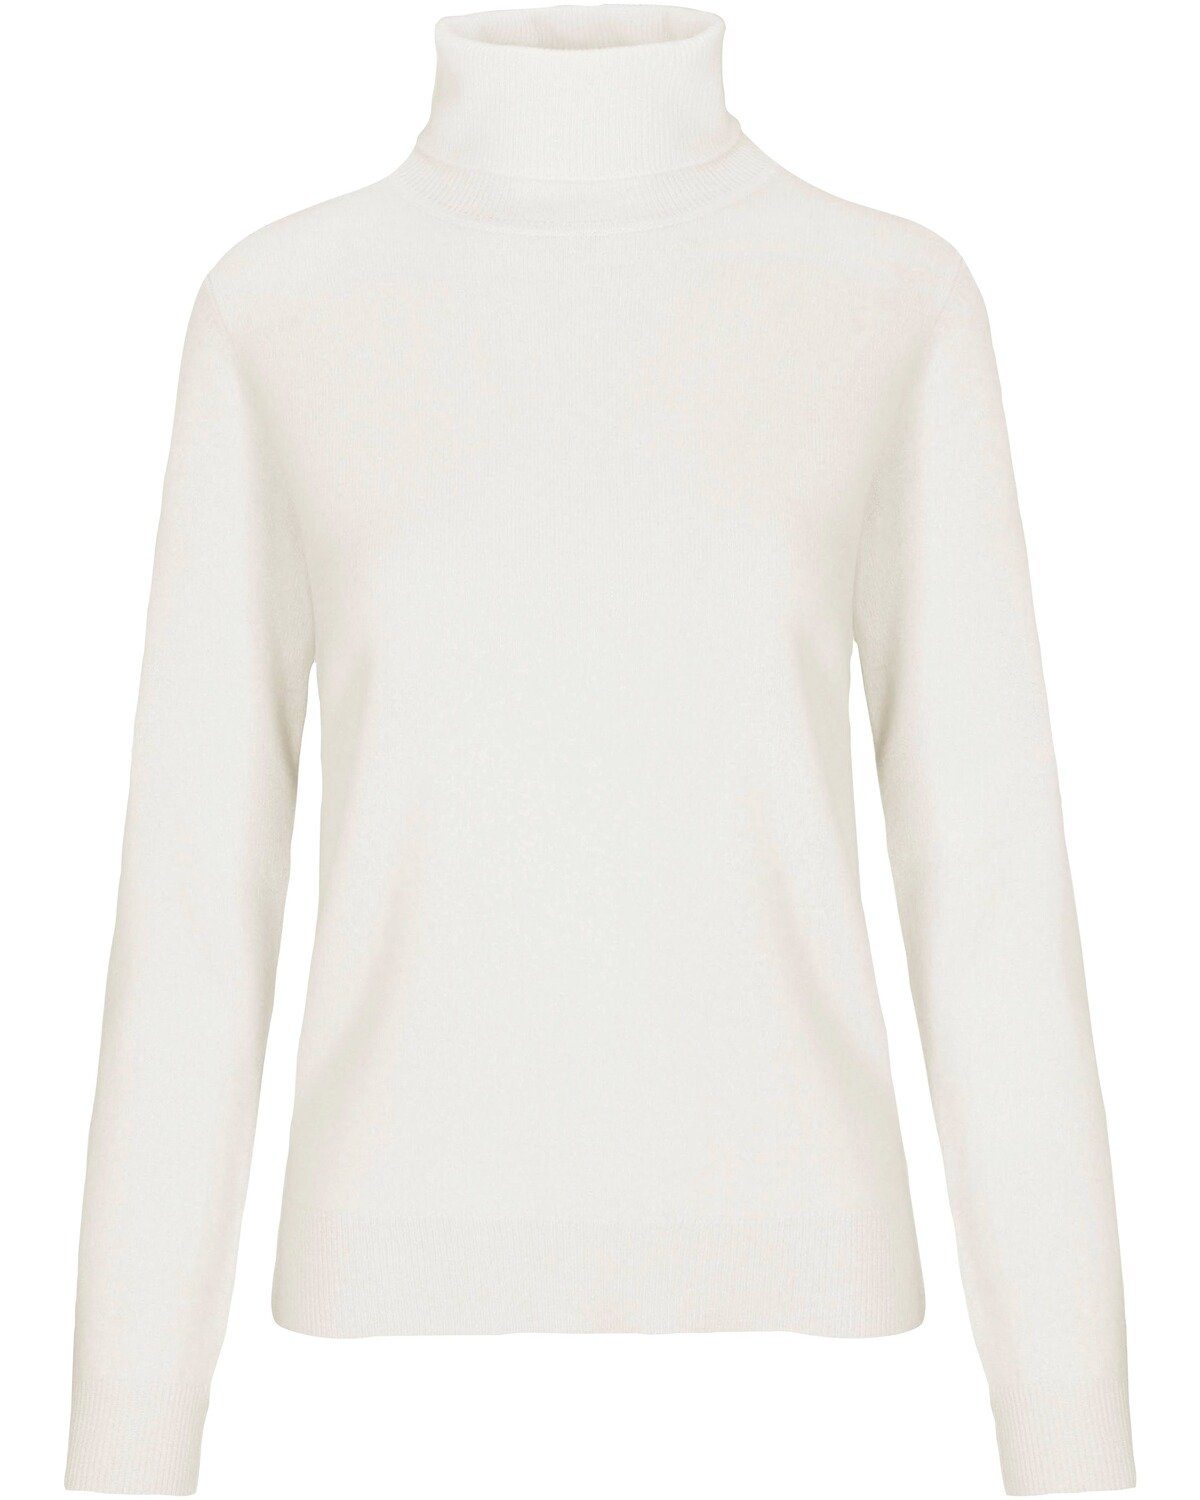 Weiße Rollkragenpullover für Damen online kaufen | OTTO